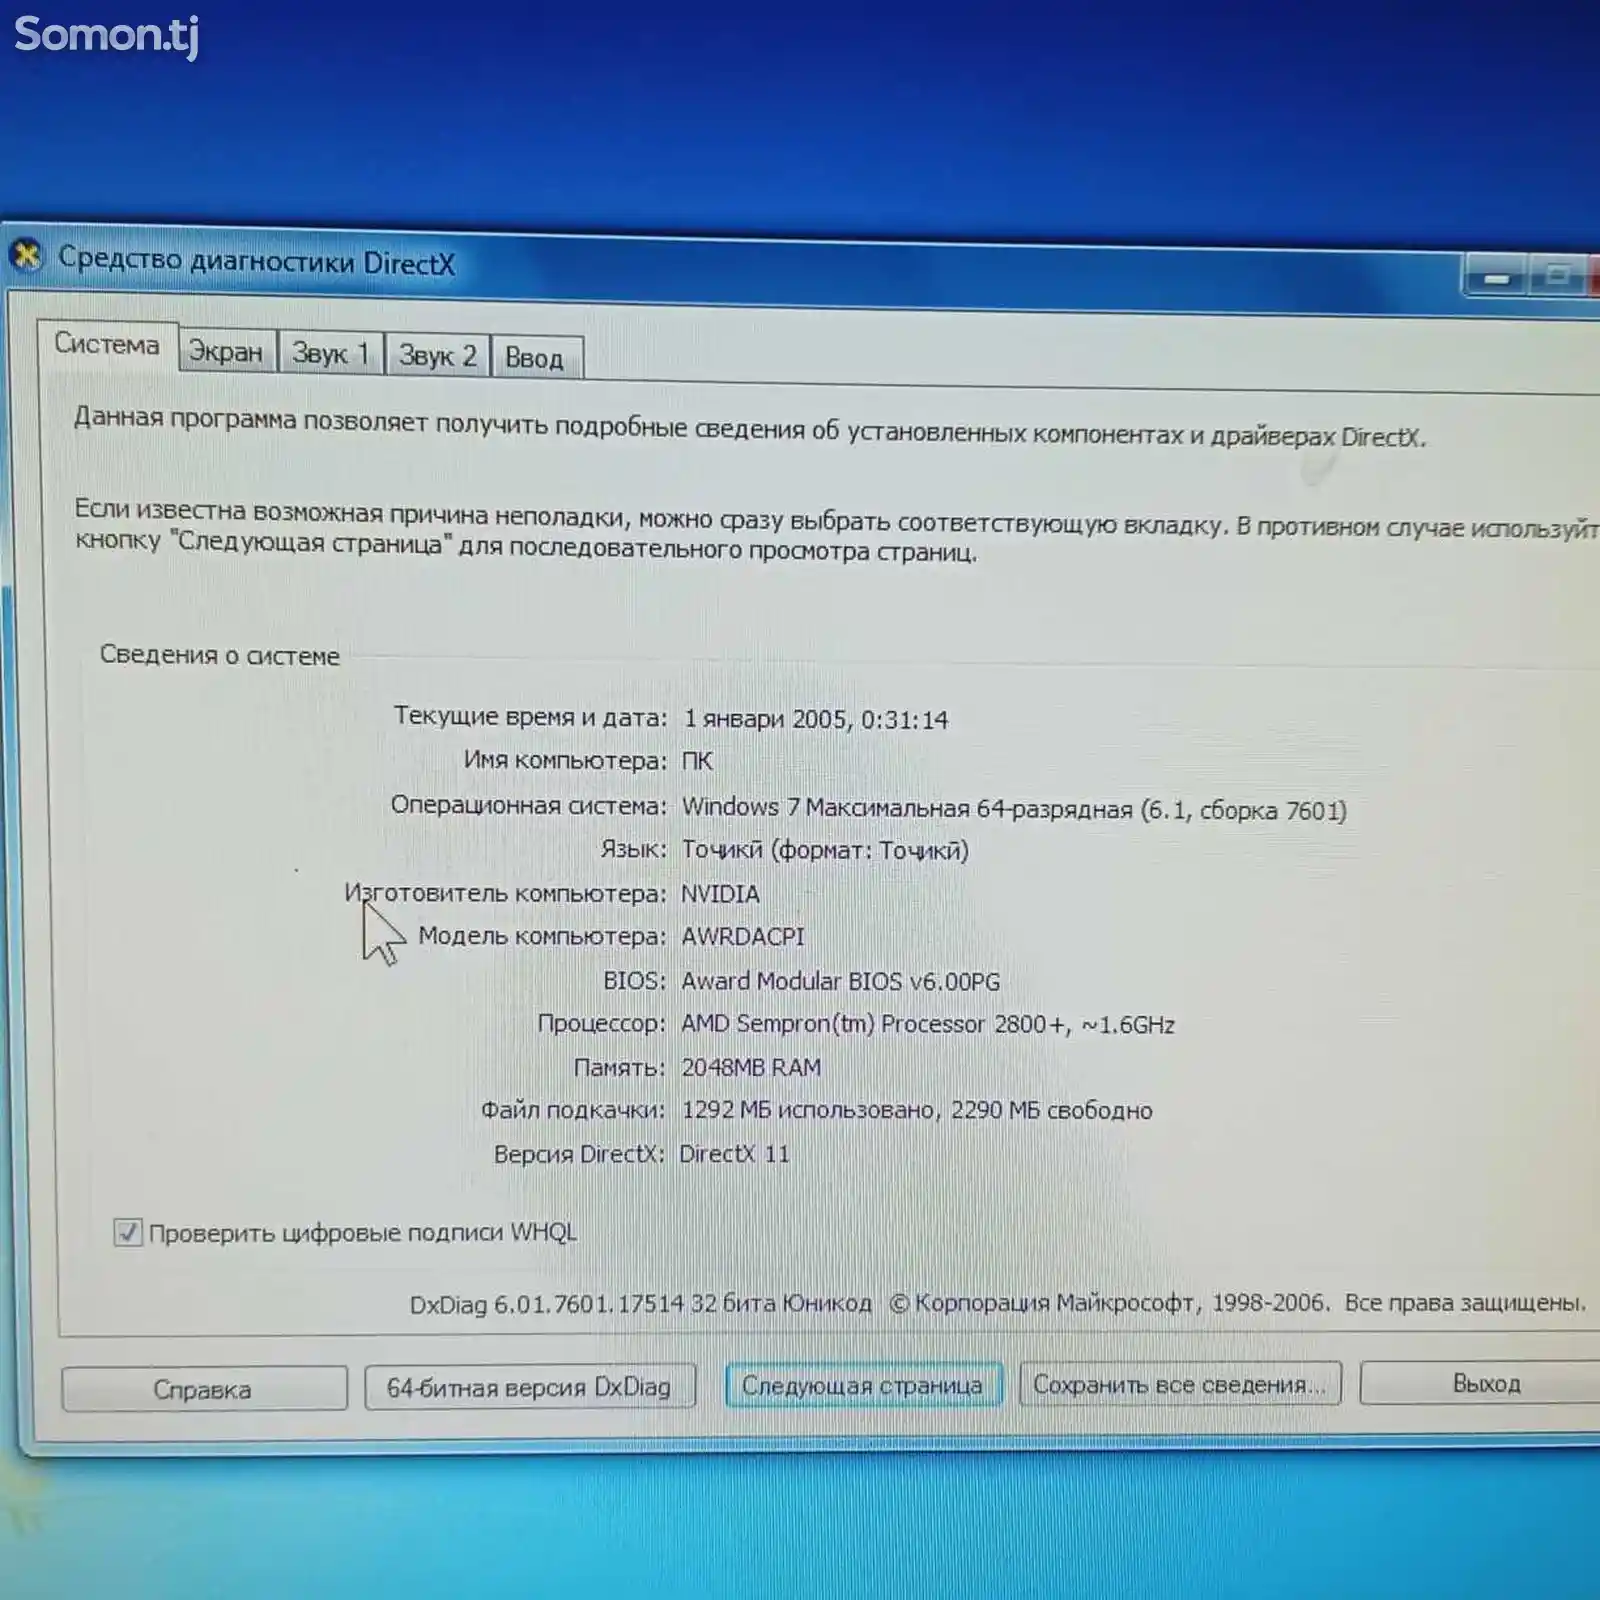 Персональный компьютер Amd Sempron 2800+-5